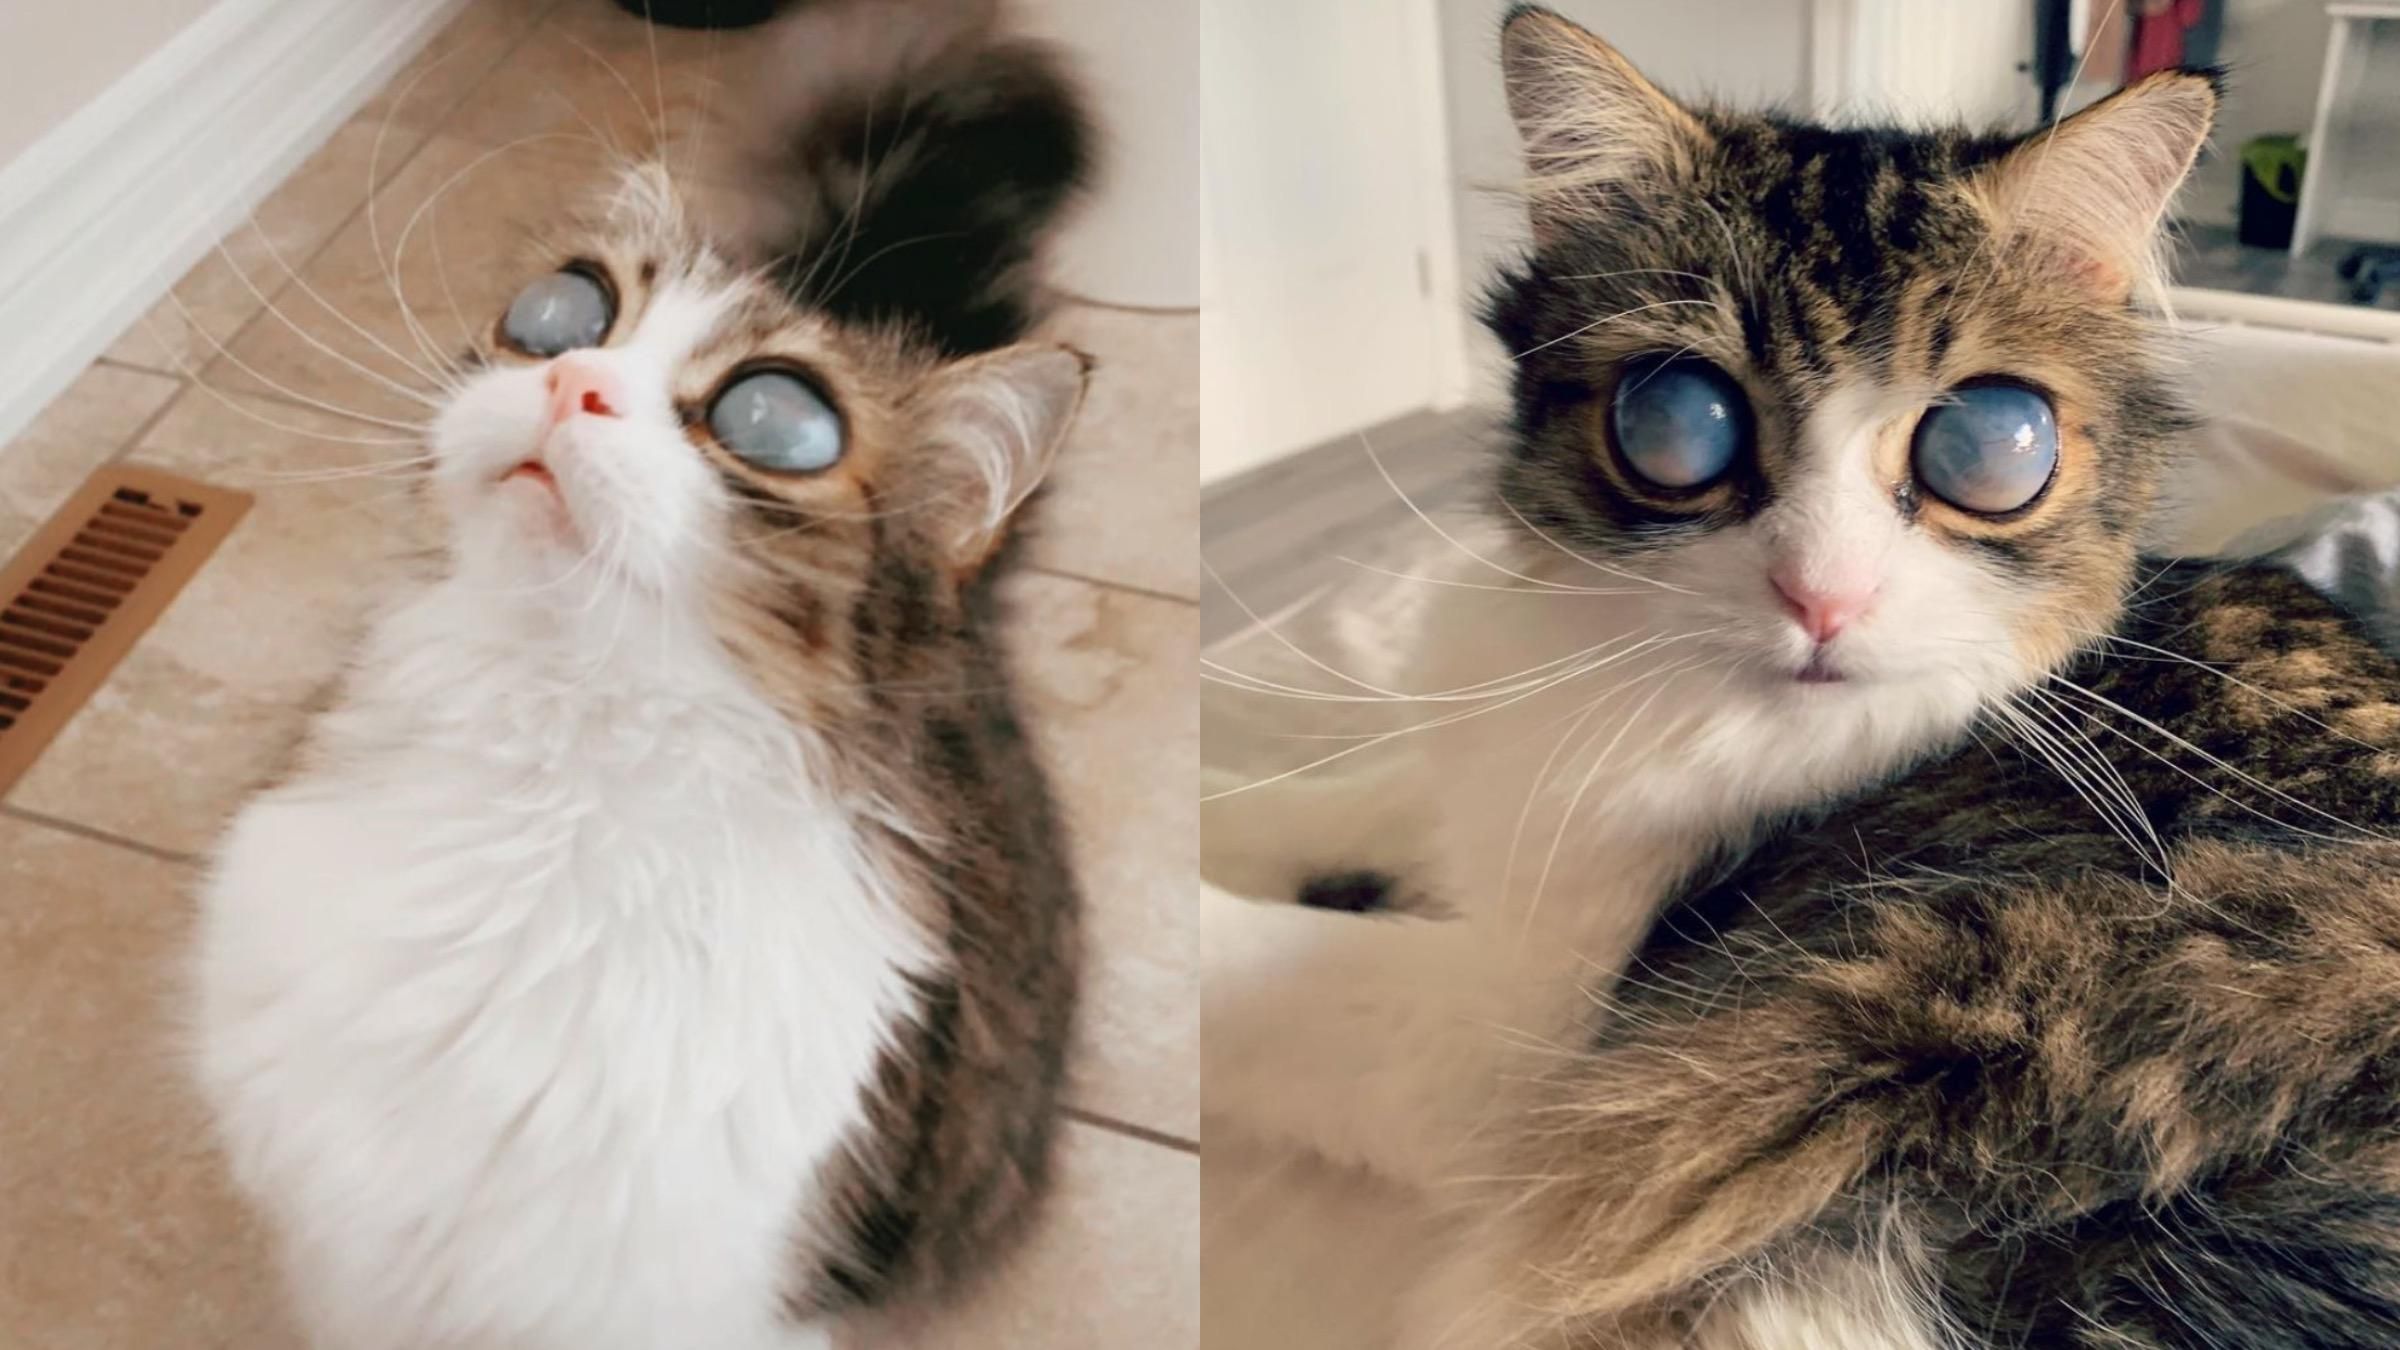 "Космічні" очі: сліпий кіт став відомим через особливість його зовнішності - Pets